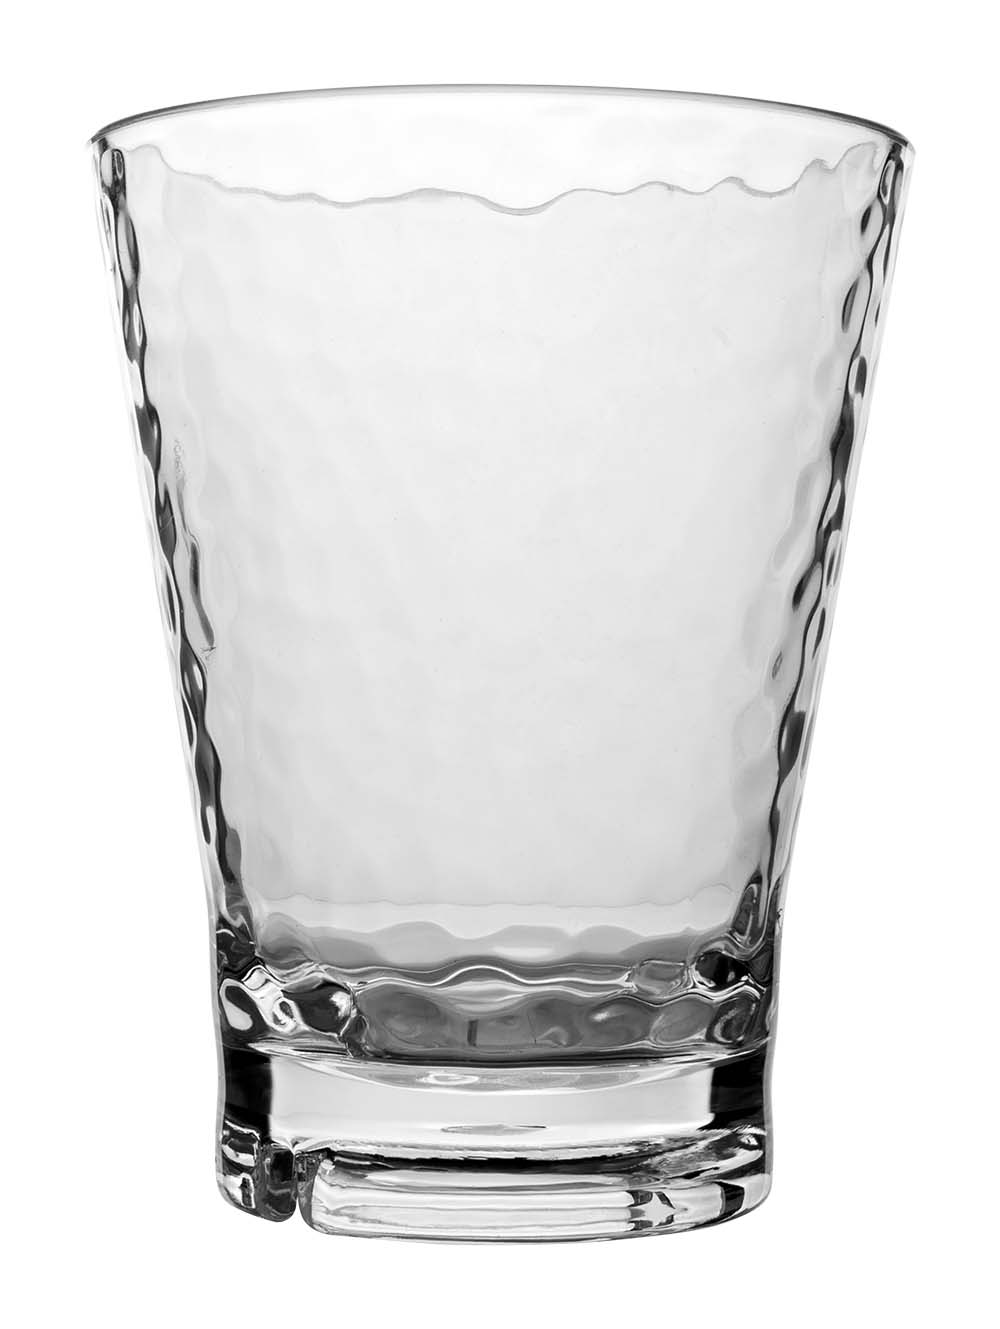 6101434 Een modern limonadeglas met speels motief. Het glas is gemaakt van zeer sterk kunstof en is BPA vrij. Daarnaast is deze kraswerend, van lichtgewicht en vaatwasmachinebestendig.